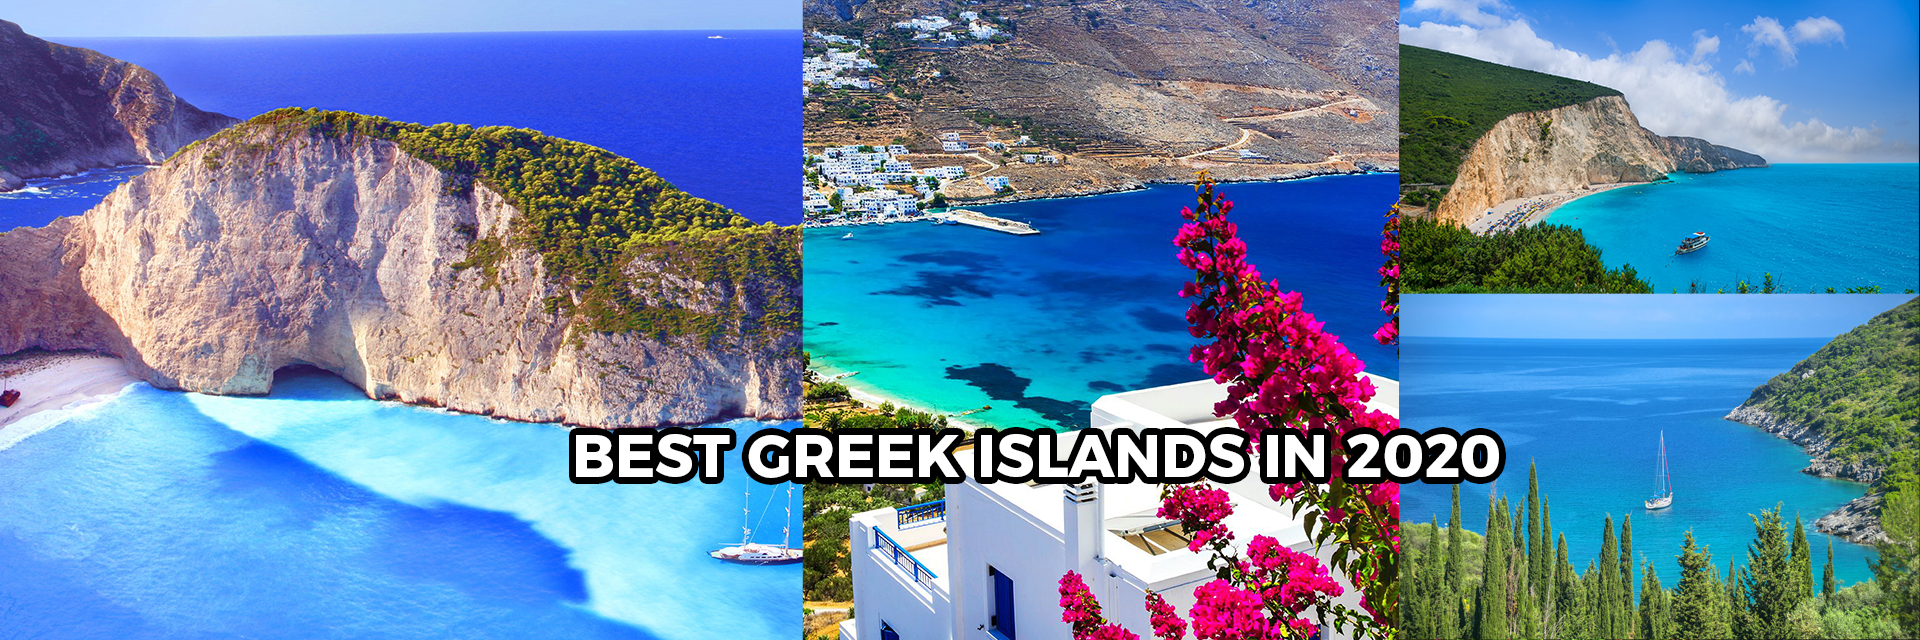 Best-Greek-Islands-in-2020